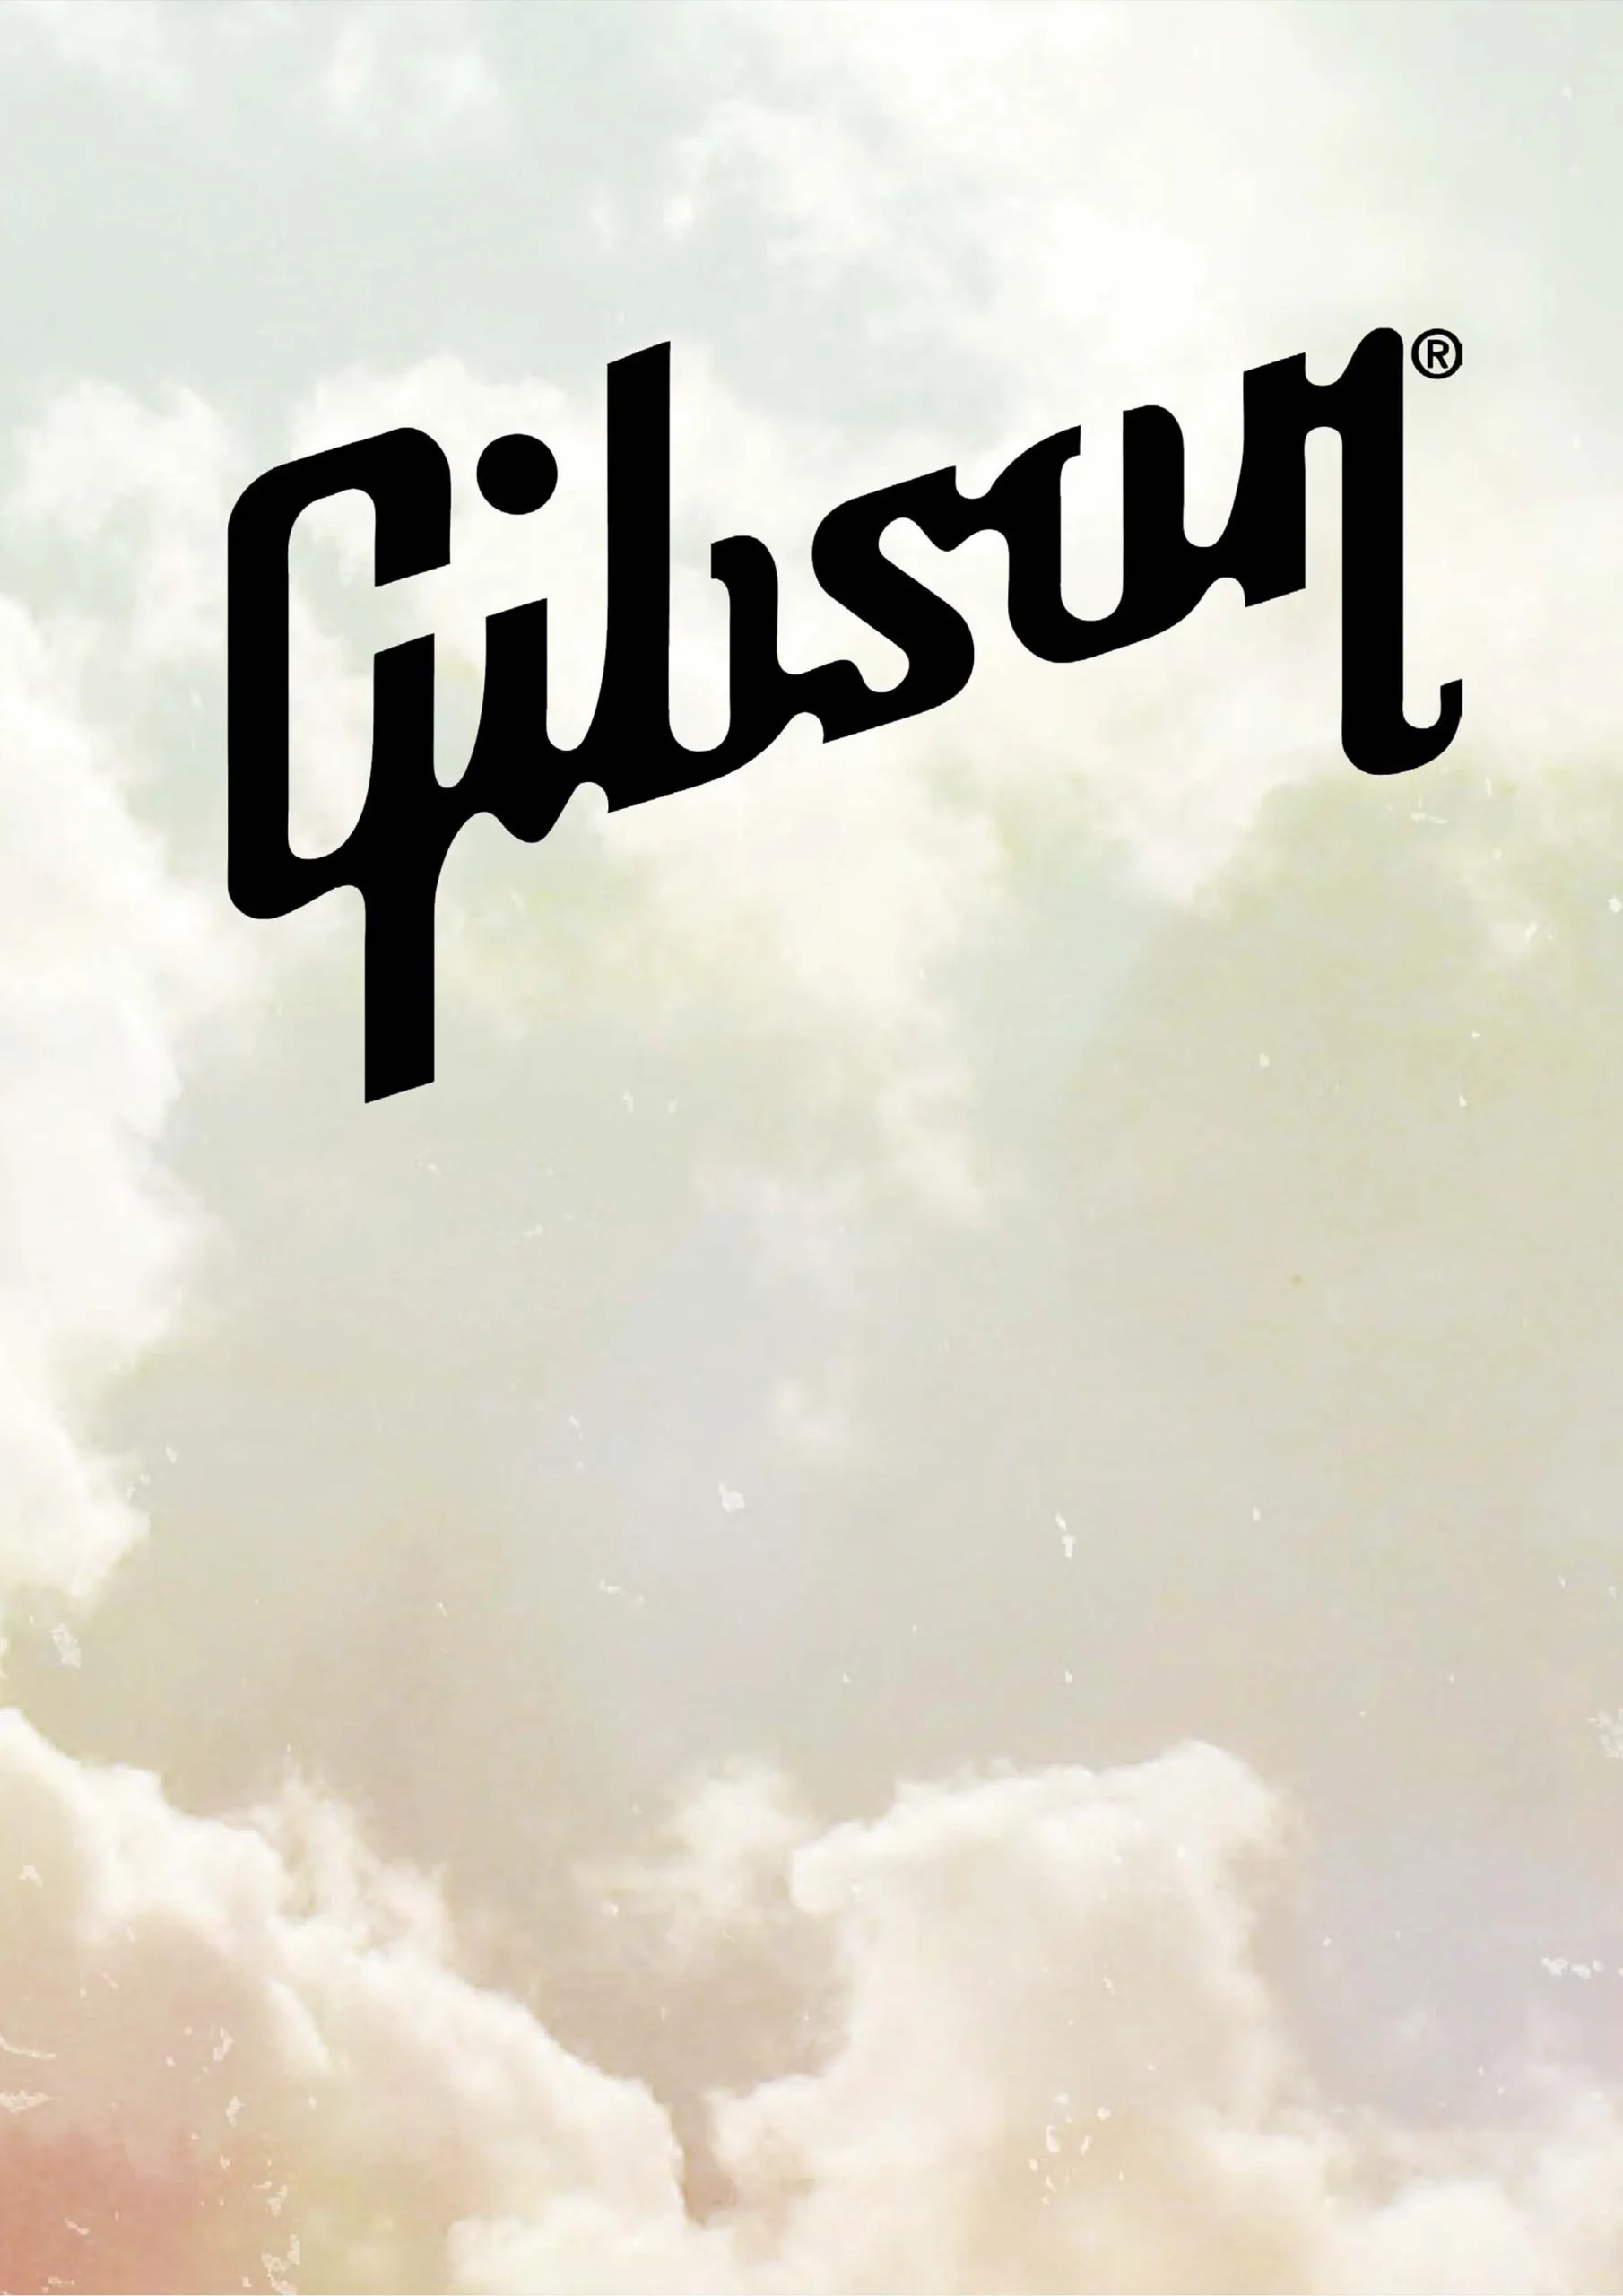 Gibson Catalog 2010